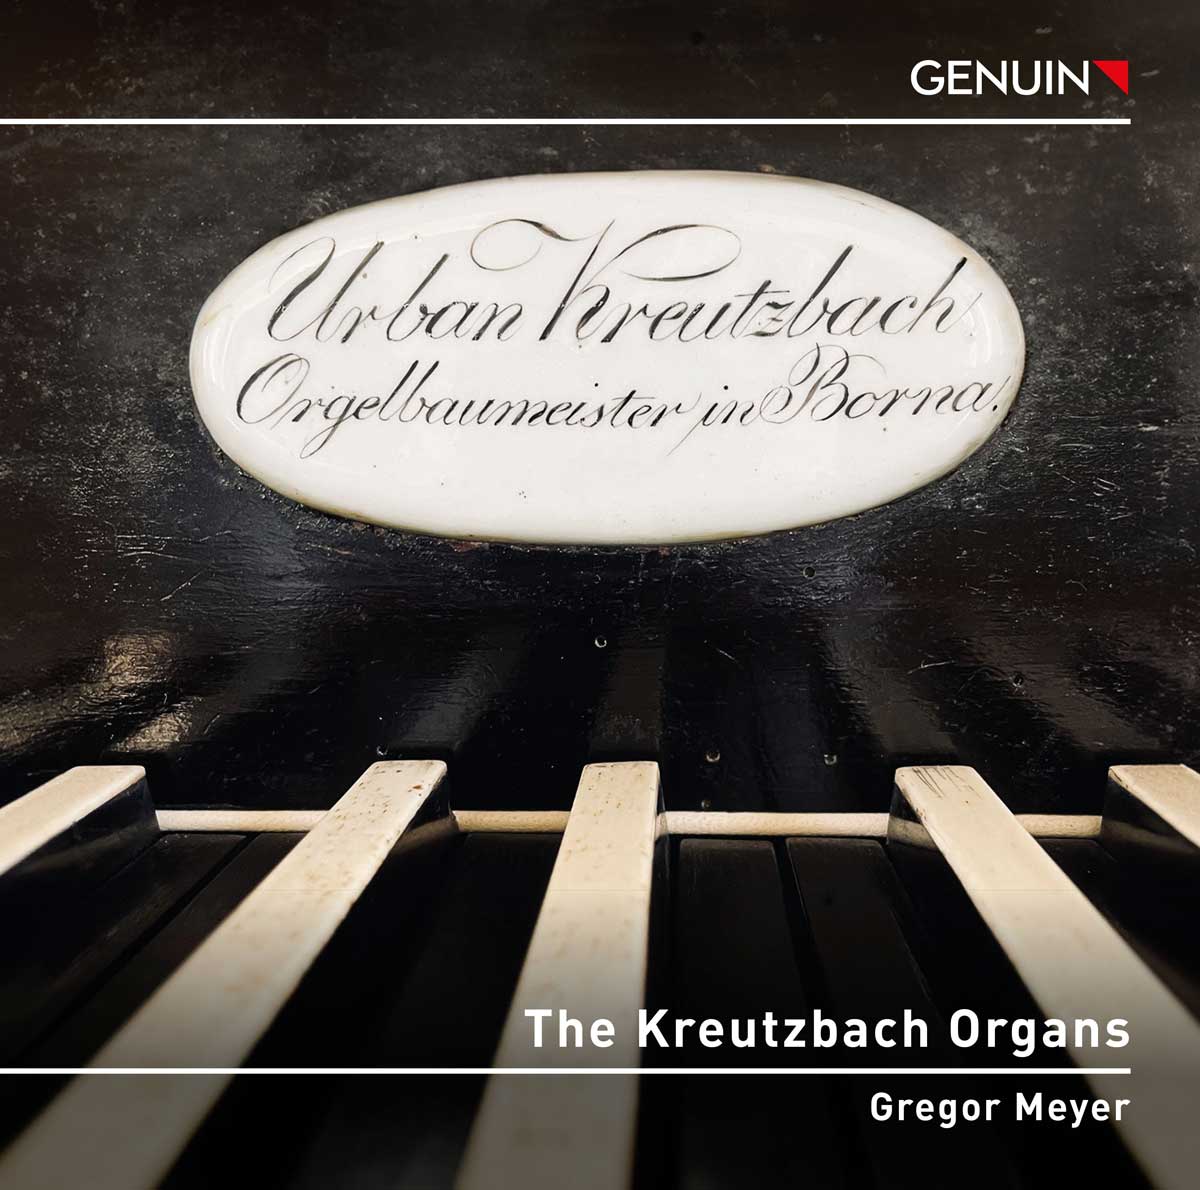 CD album cover 'Die Kreutzbach Orgeln' (GEN 24862) with Gregor Meyer